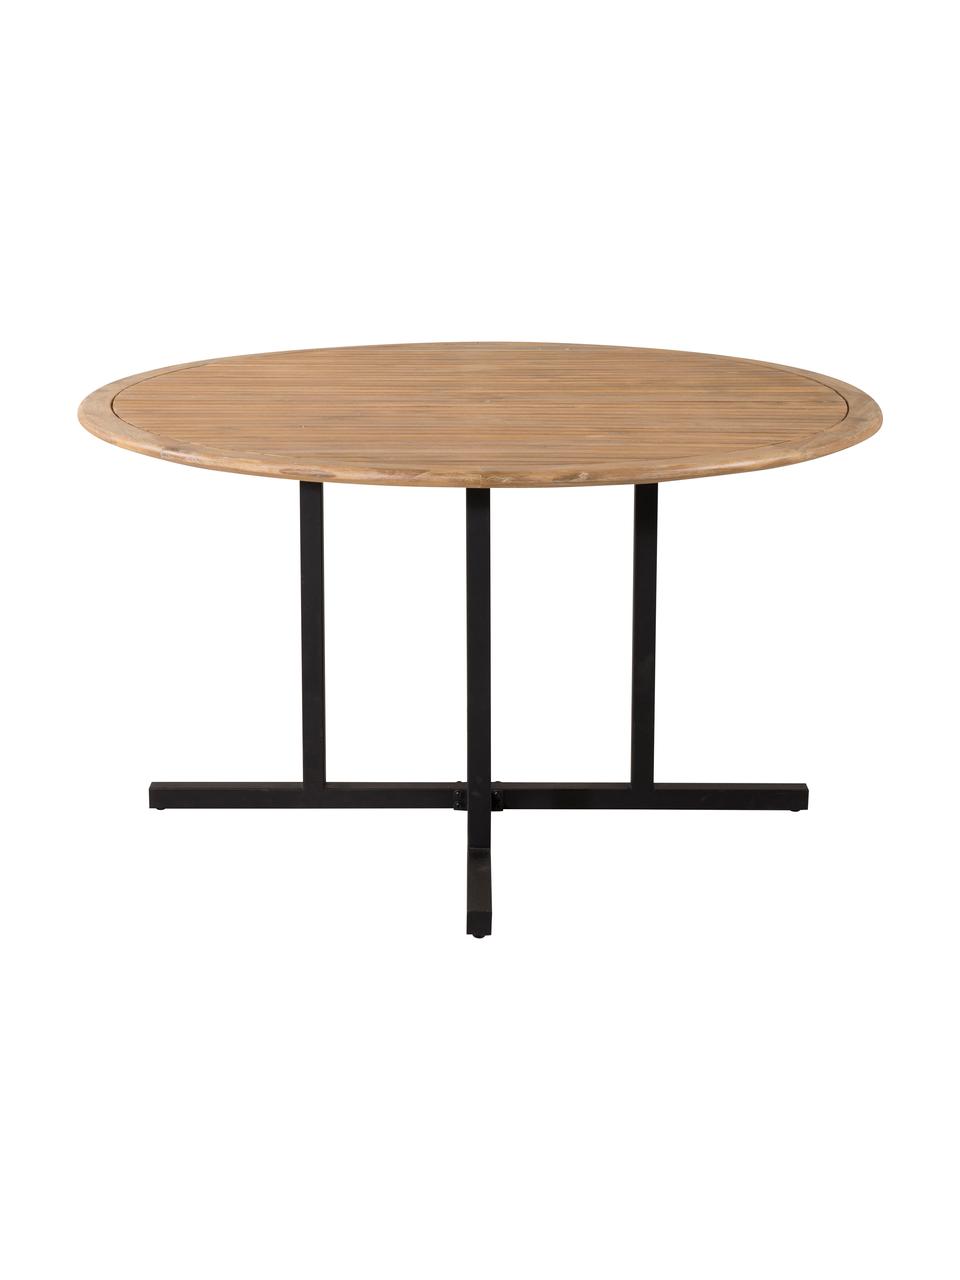 Holz-Gartentisch Cruz, Tischplatte: Akazienholz, Gestell: Metall, beschichtet, Akazienholz, Ø 140 cm x H 76 cm